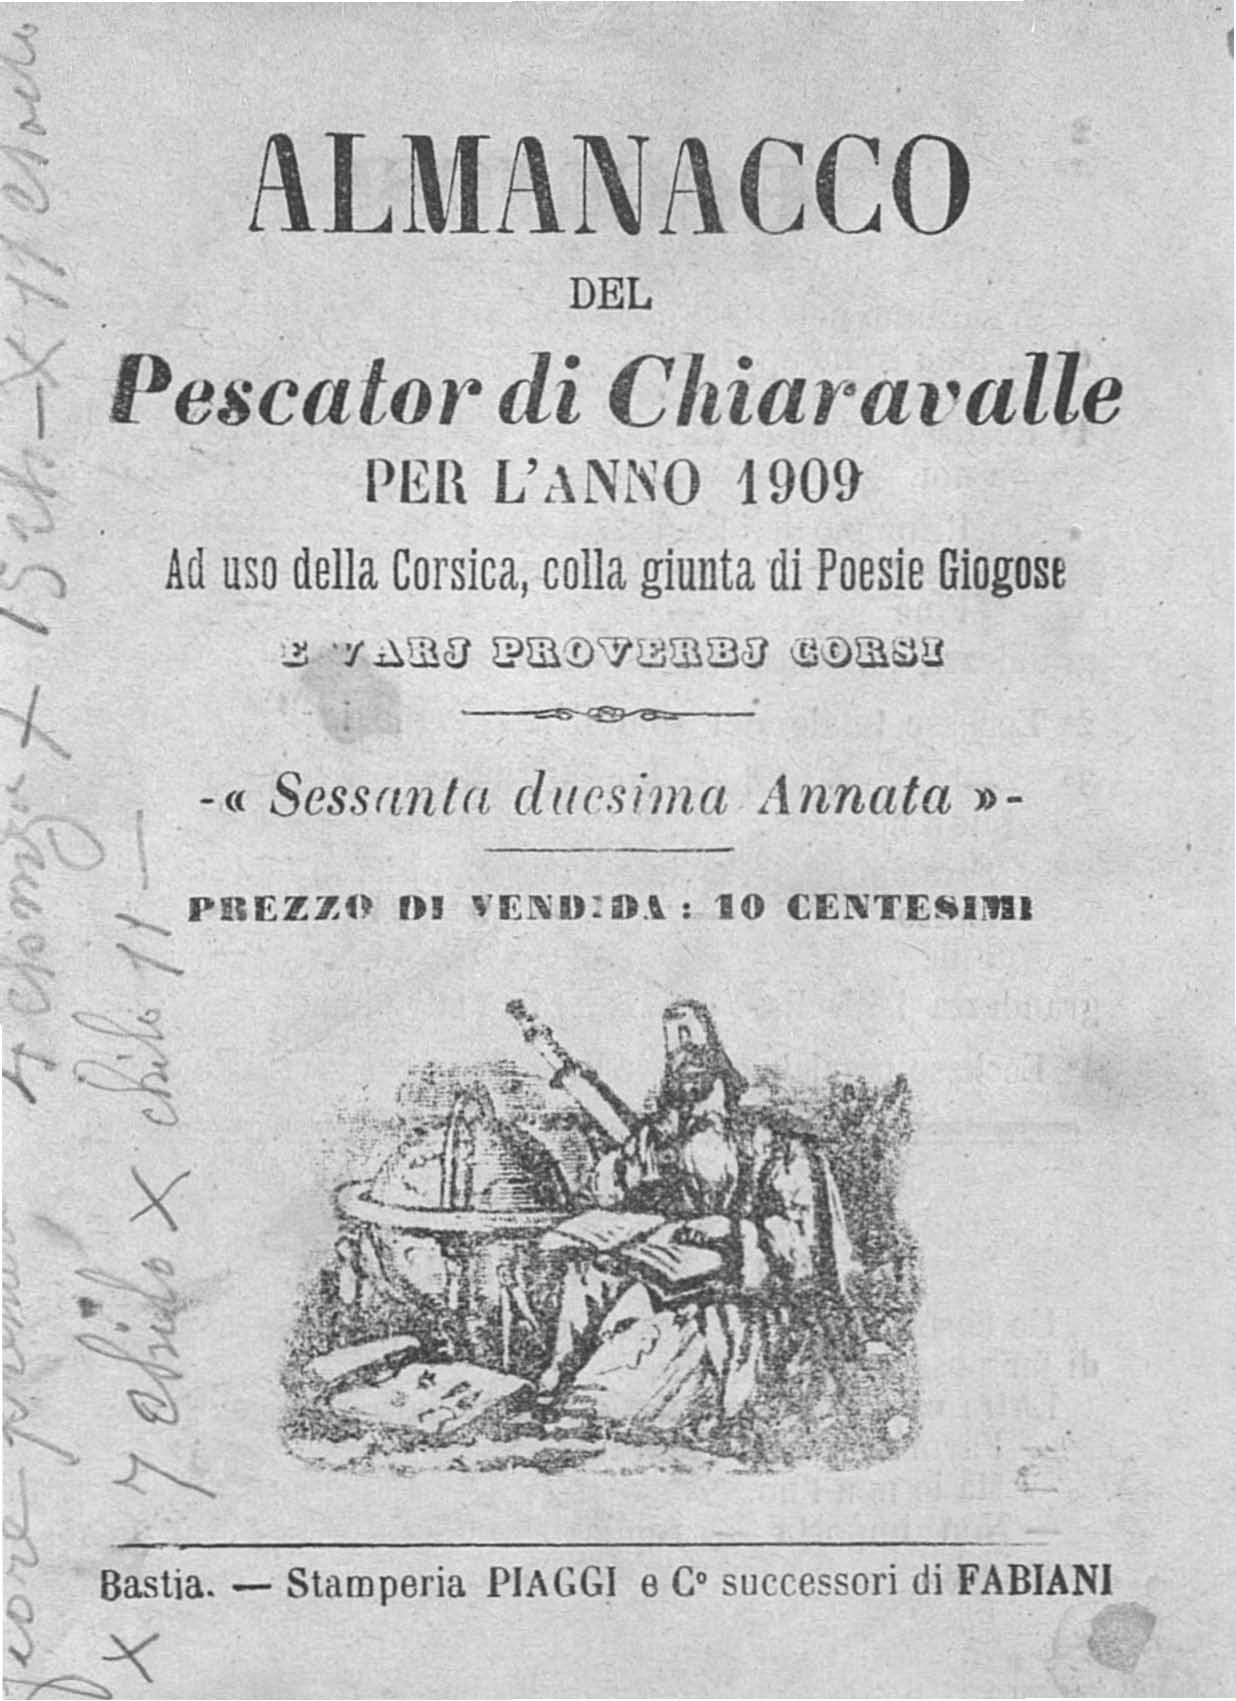 >Almanacco del Pescator di Chiaravalle per l'anno 1909